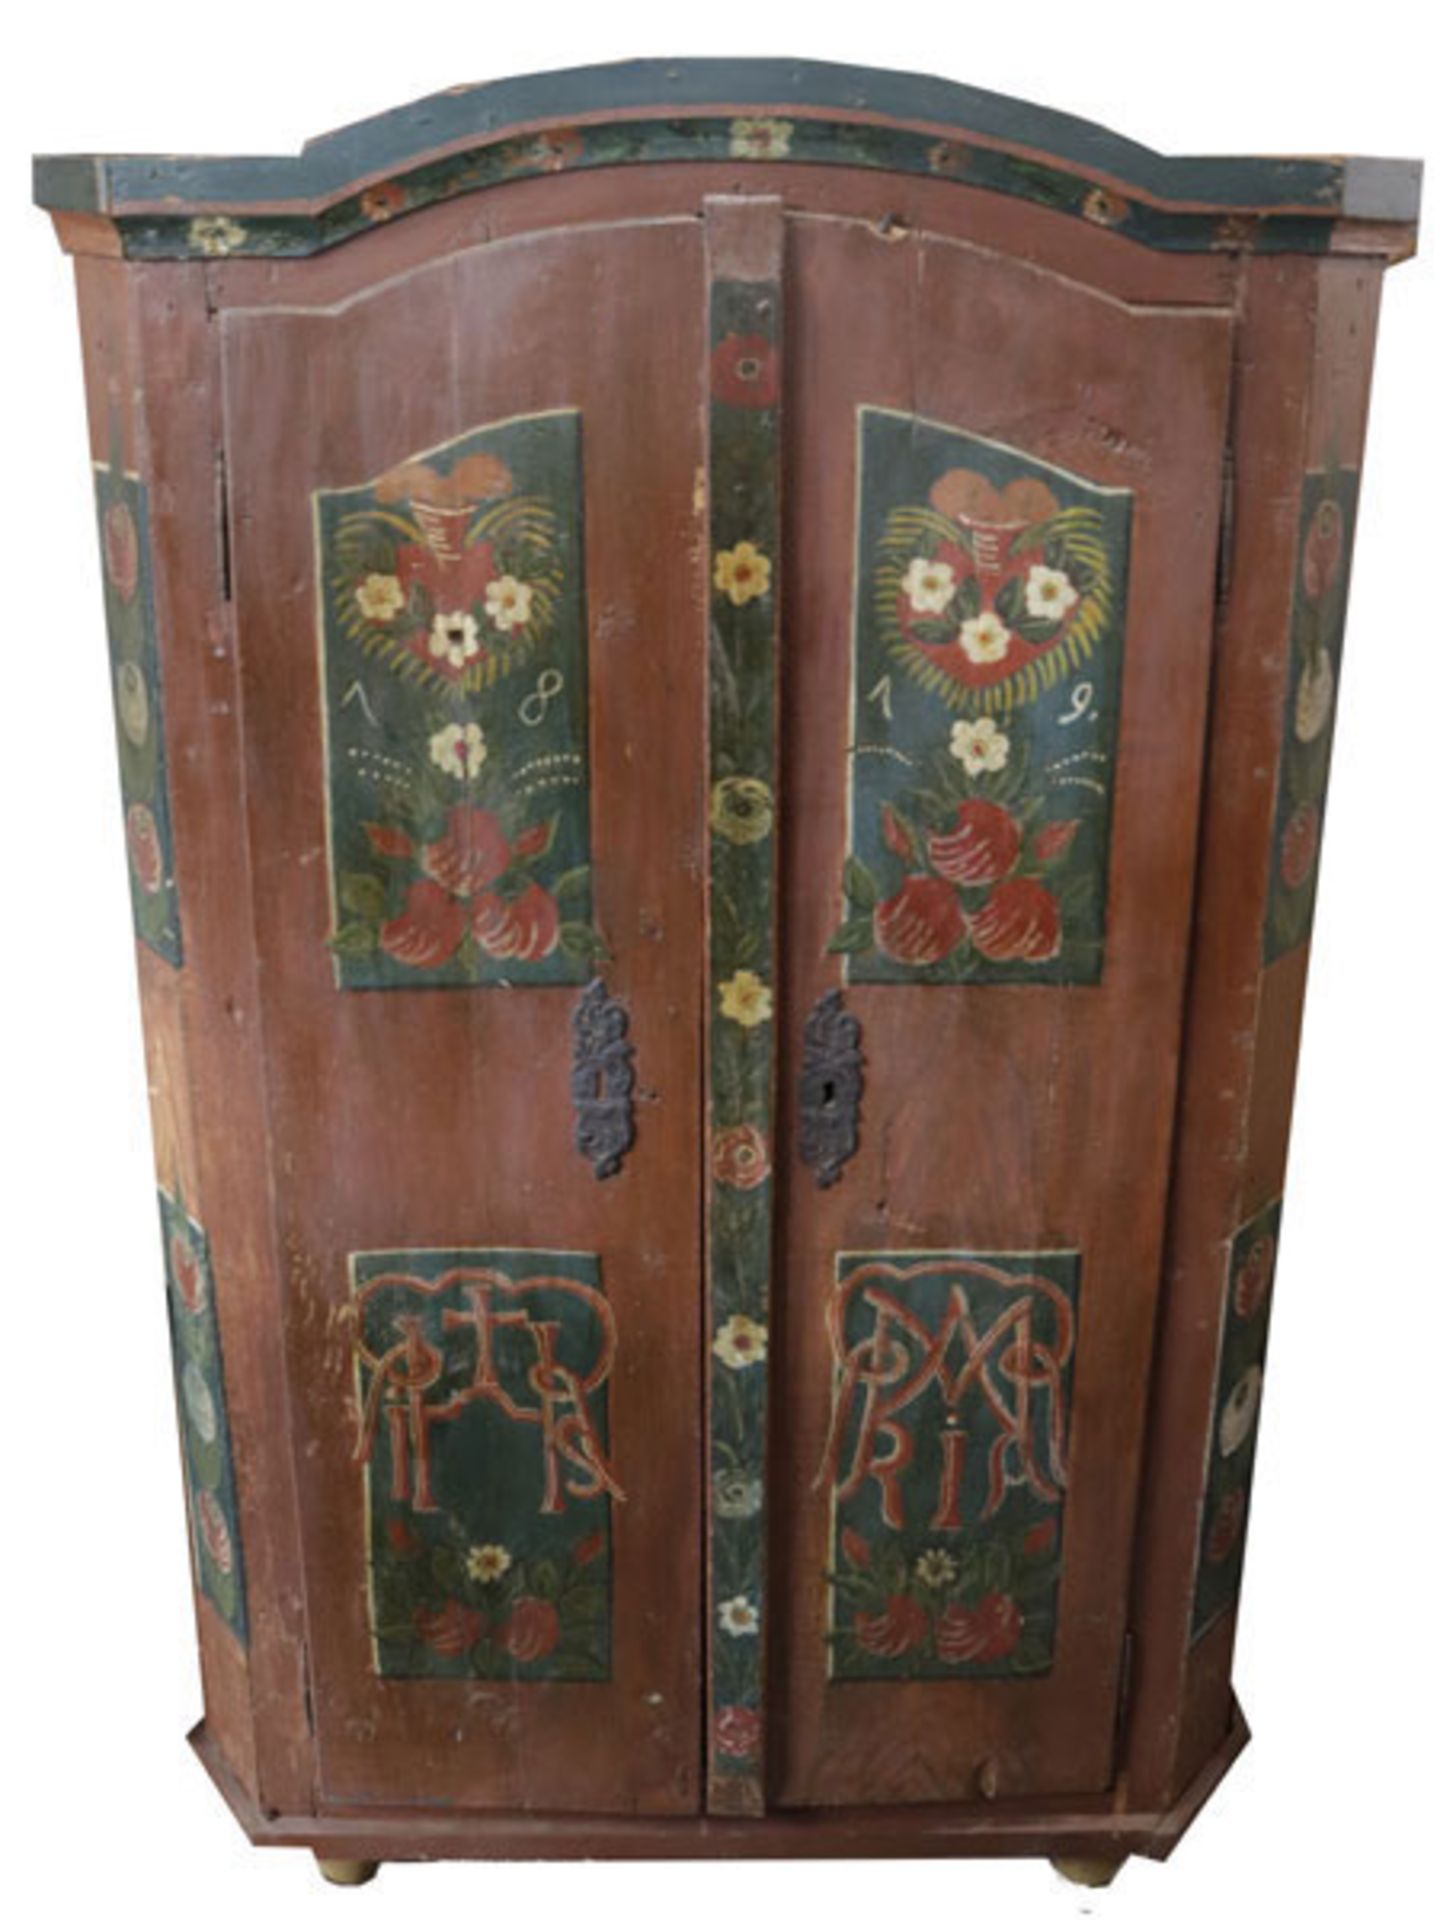 Bauernschrank, Korpus mit Doppeltür, rostbraun mit bunter, bäuerlicher Blumenbemalung, datiert 1819,